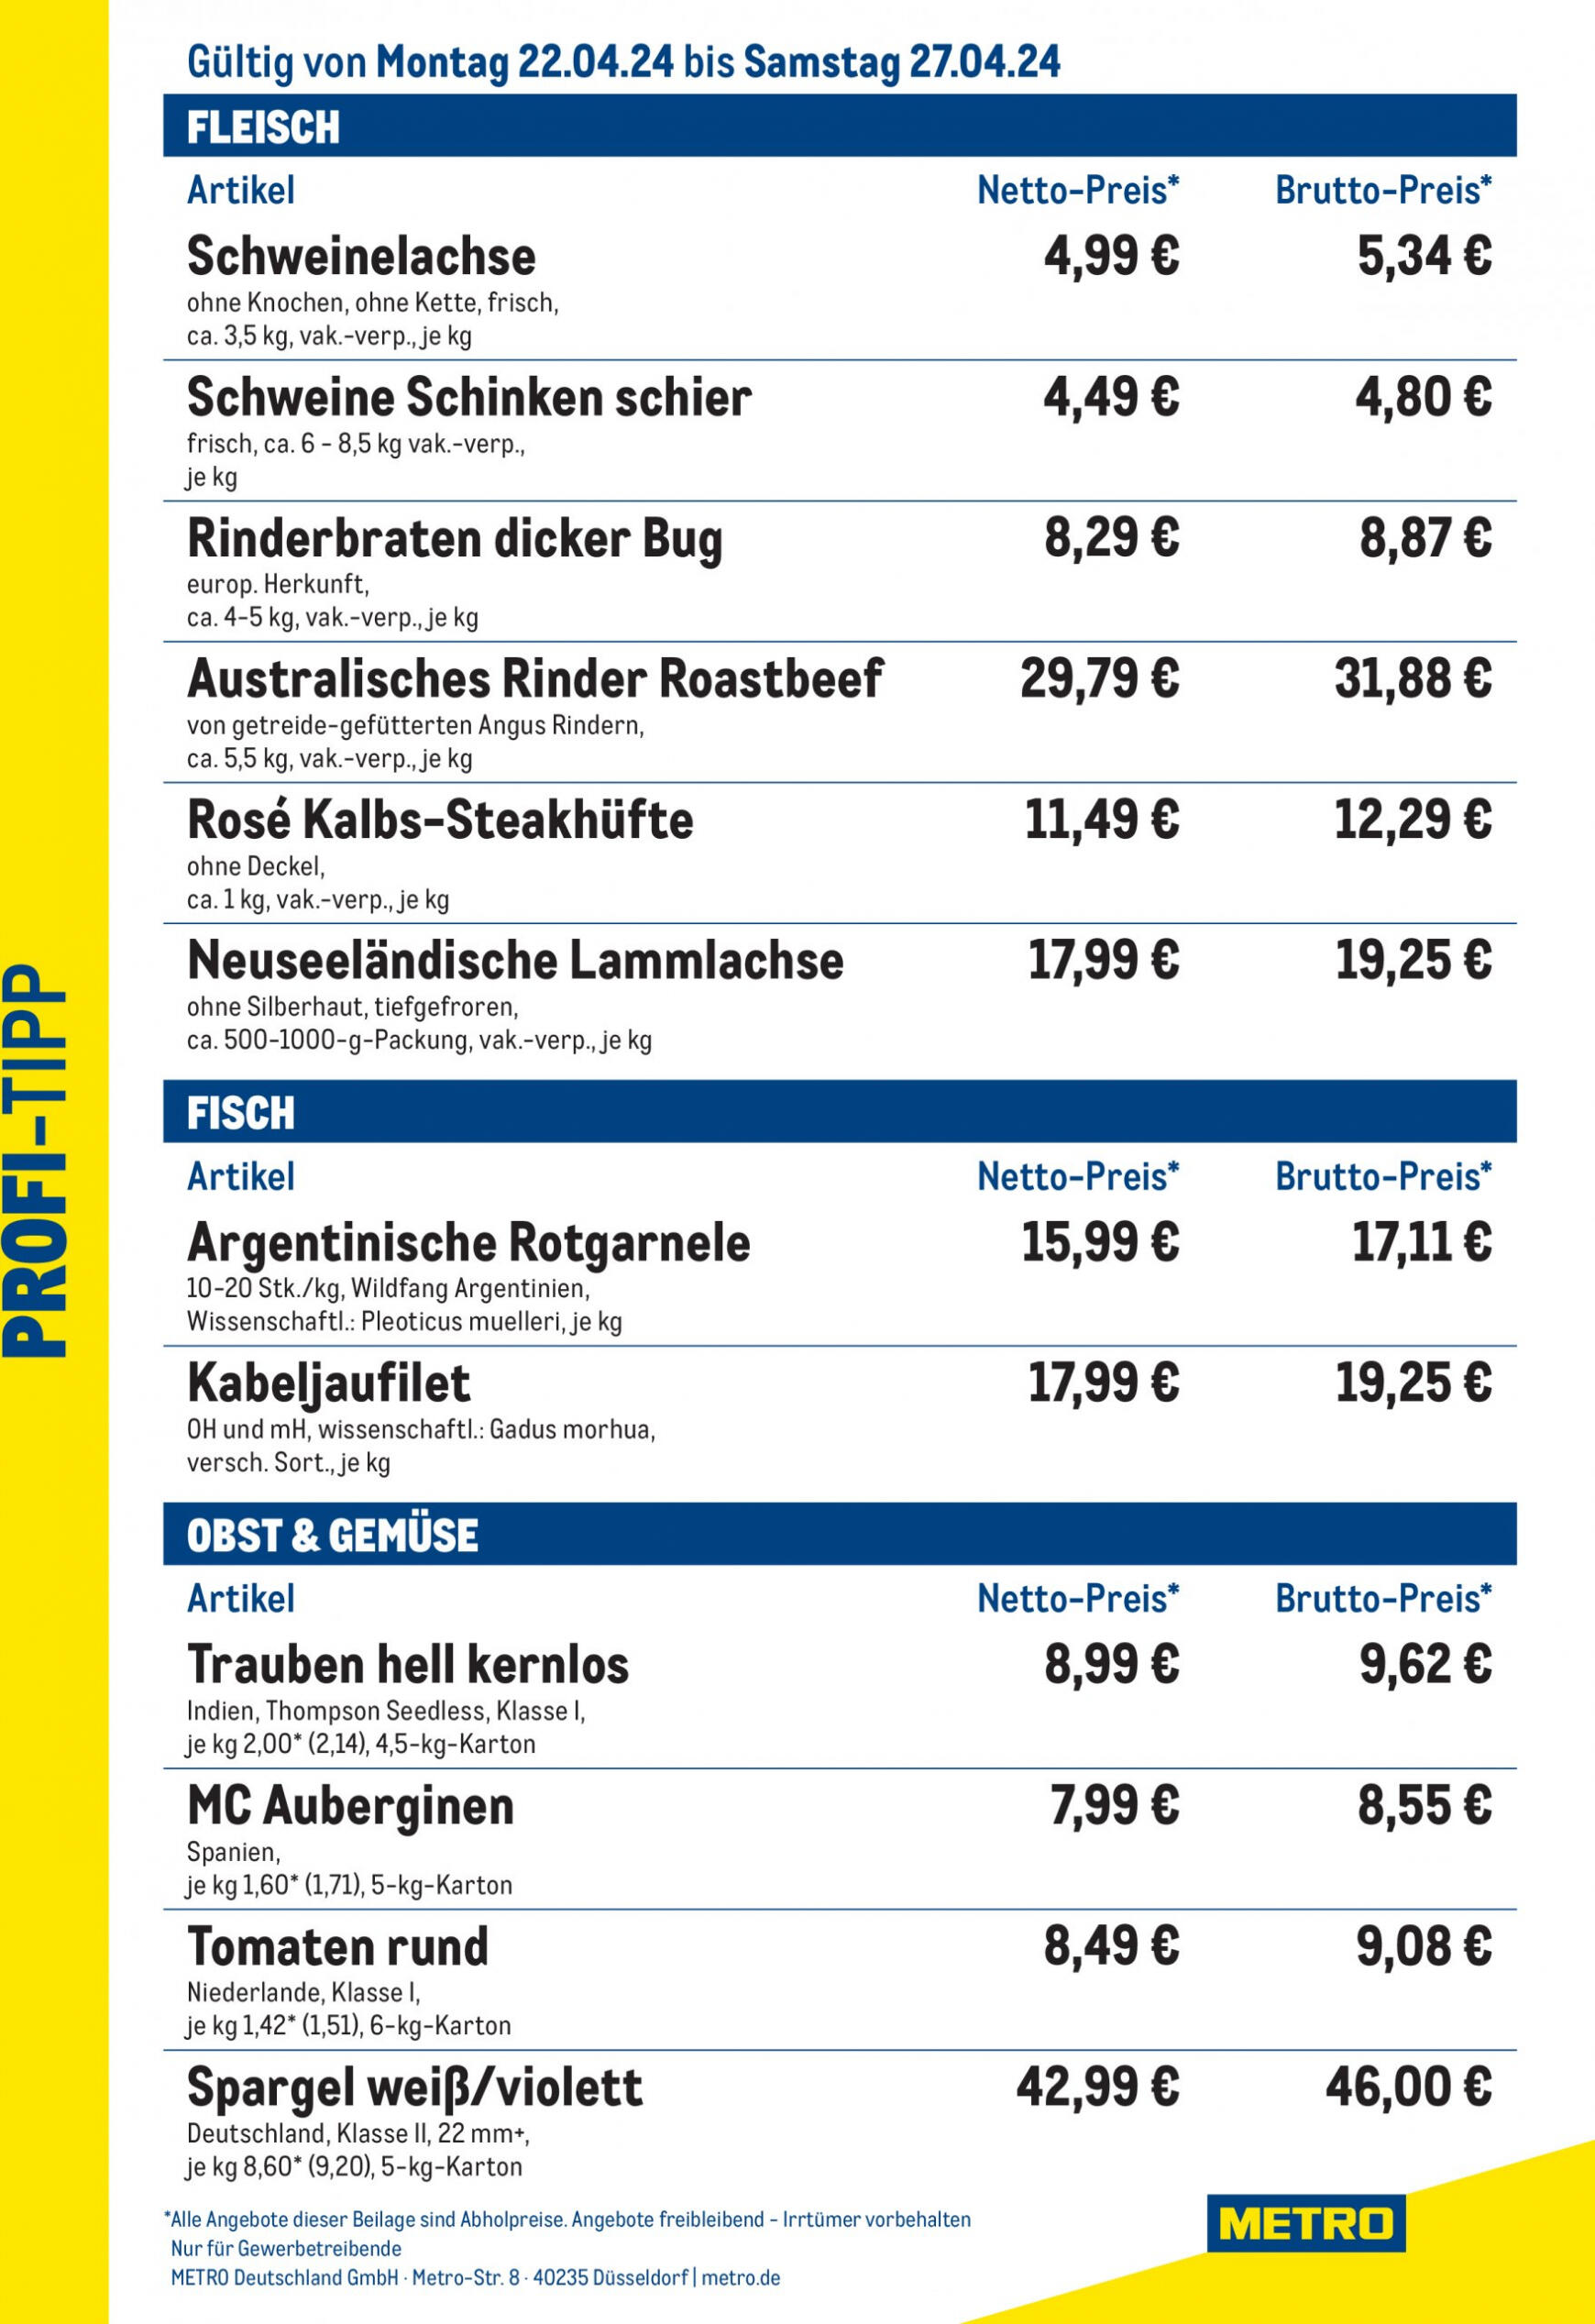 metro - Flyer Metro - Profi-Tipp aktuell 22.04. - 27.04. - page: 1